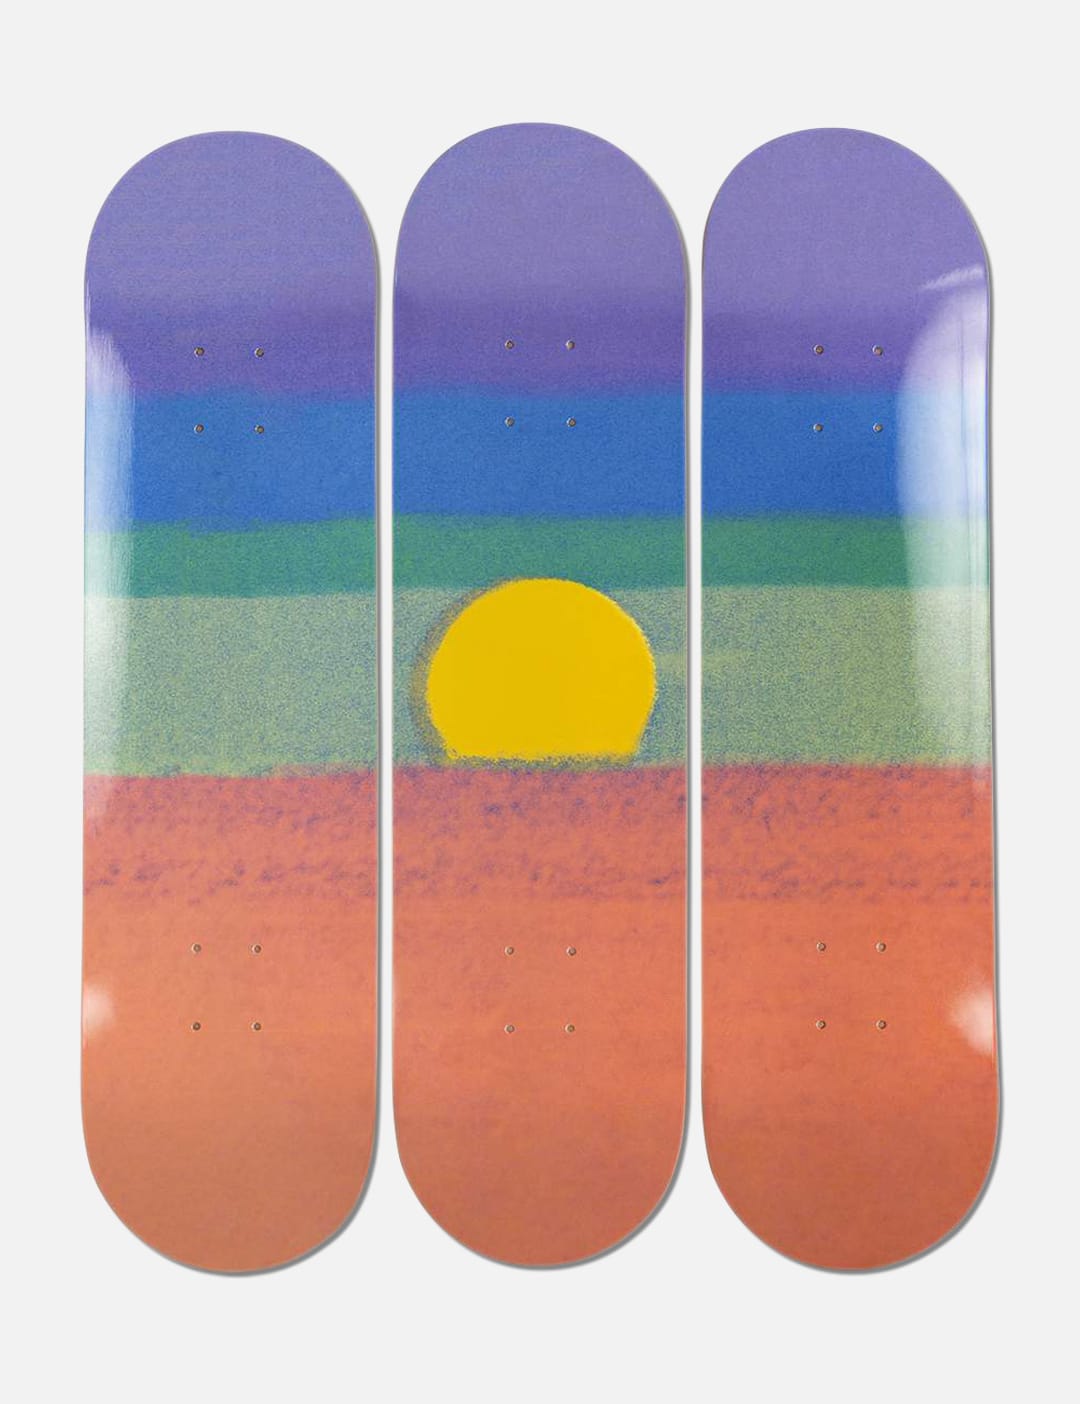 THE SKATEROOM - アンディ・ウォーホル サンセット スケートボード